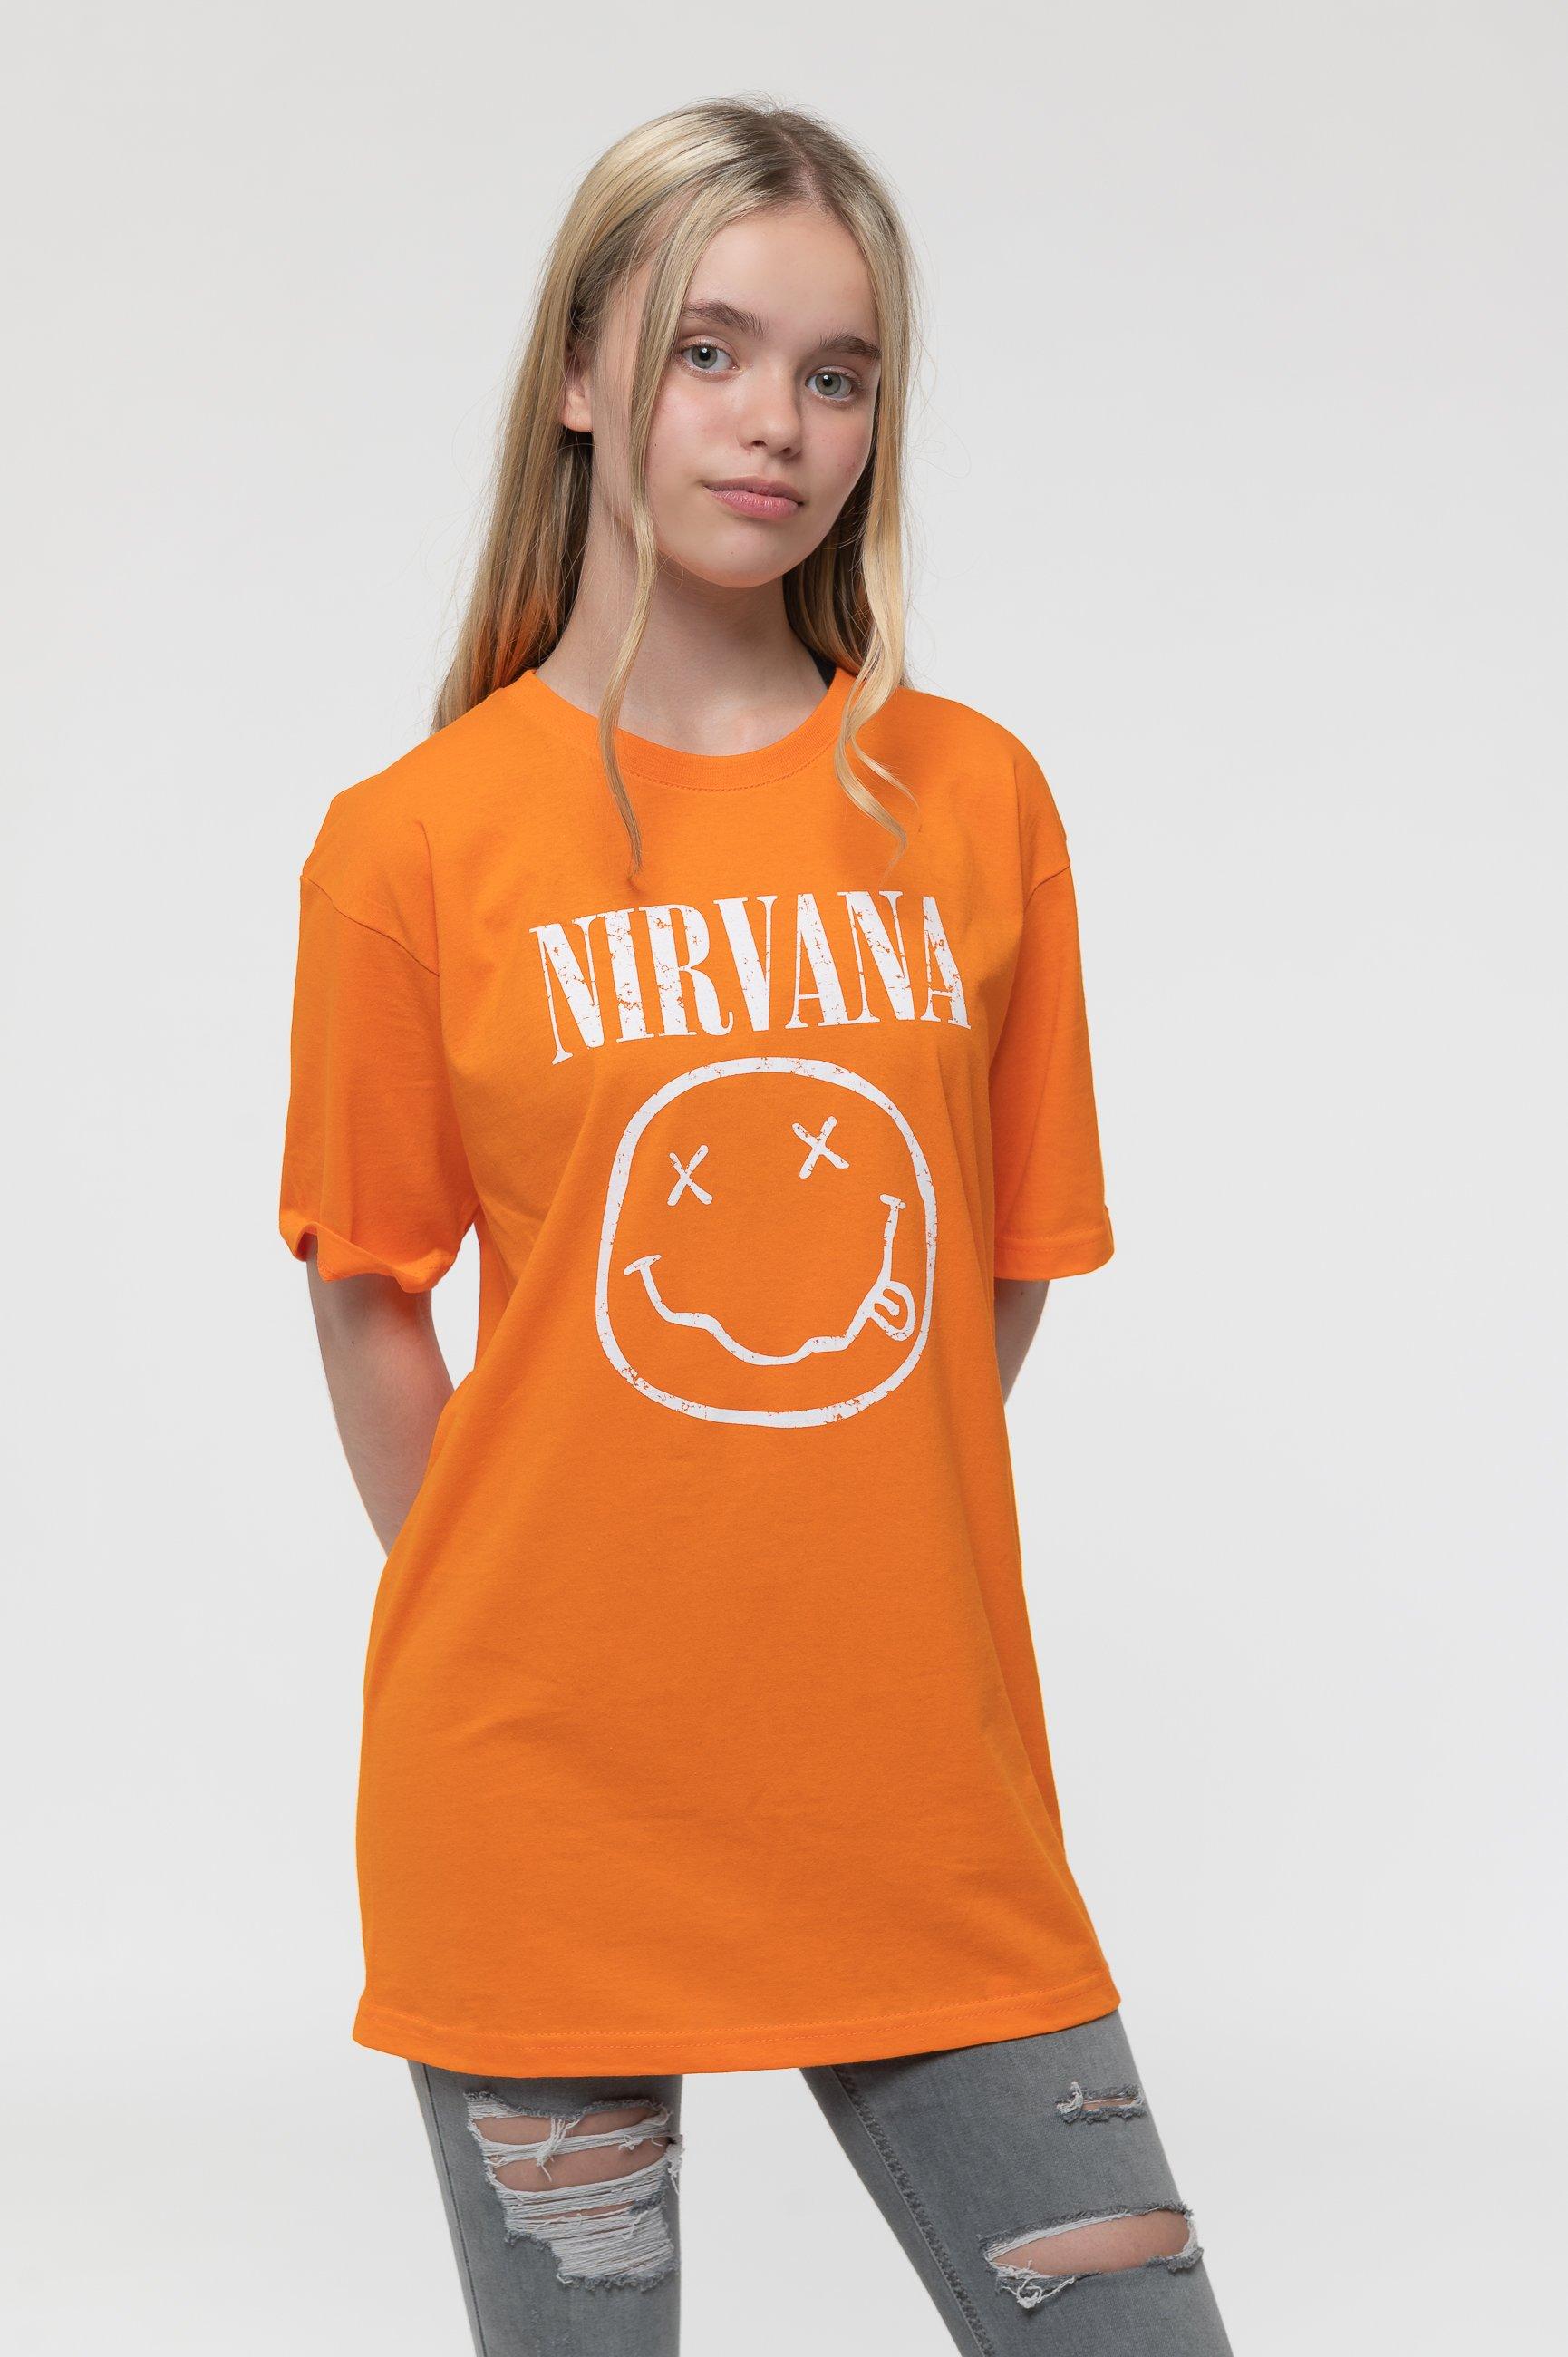 Белая футболка со смайликом Nirvana, оранжевый футболка смайлик размер 14 лет белый